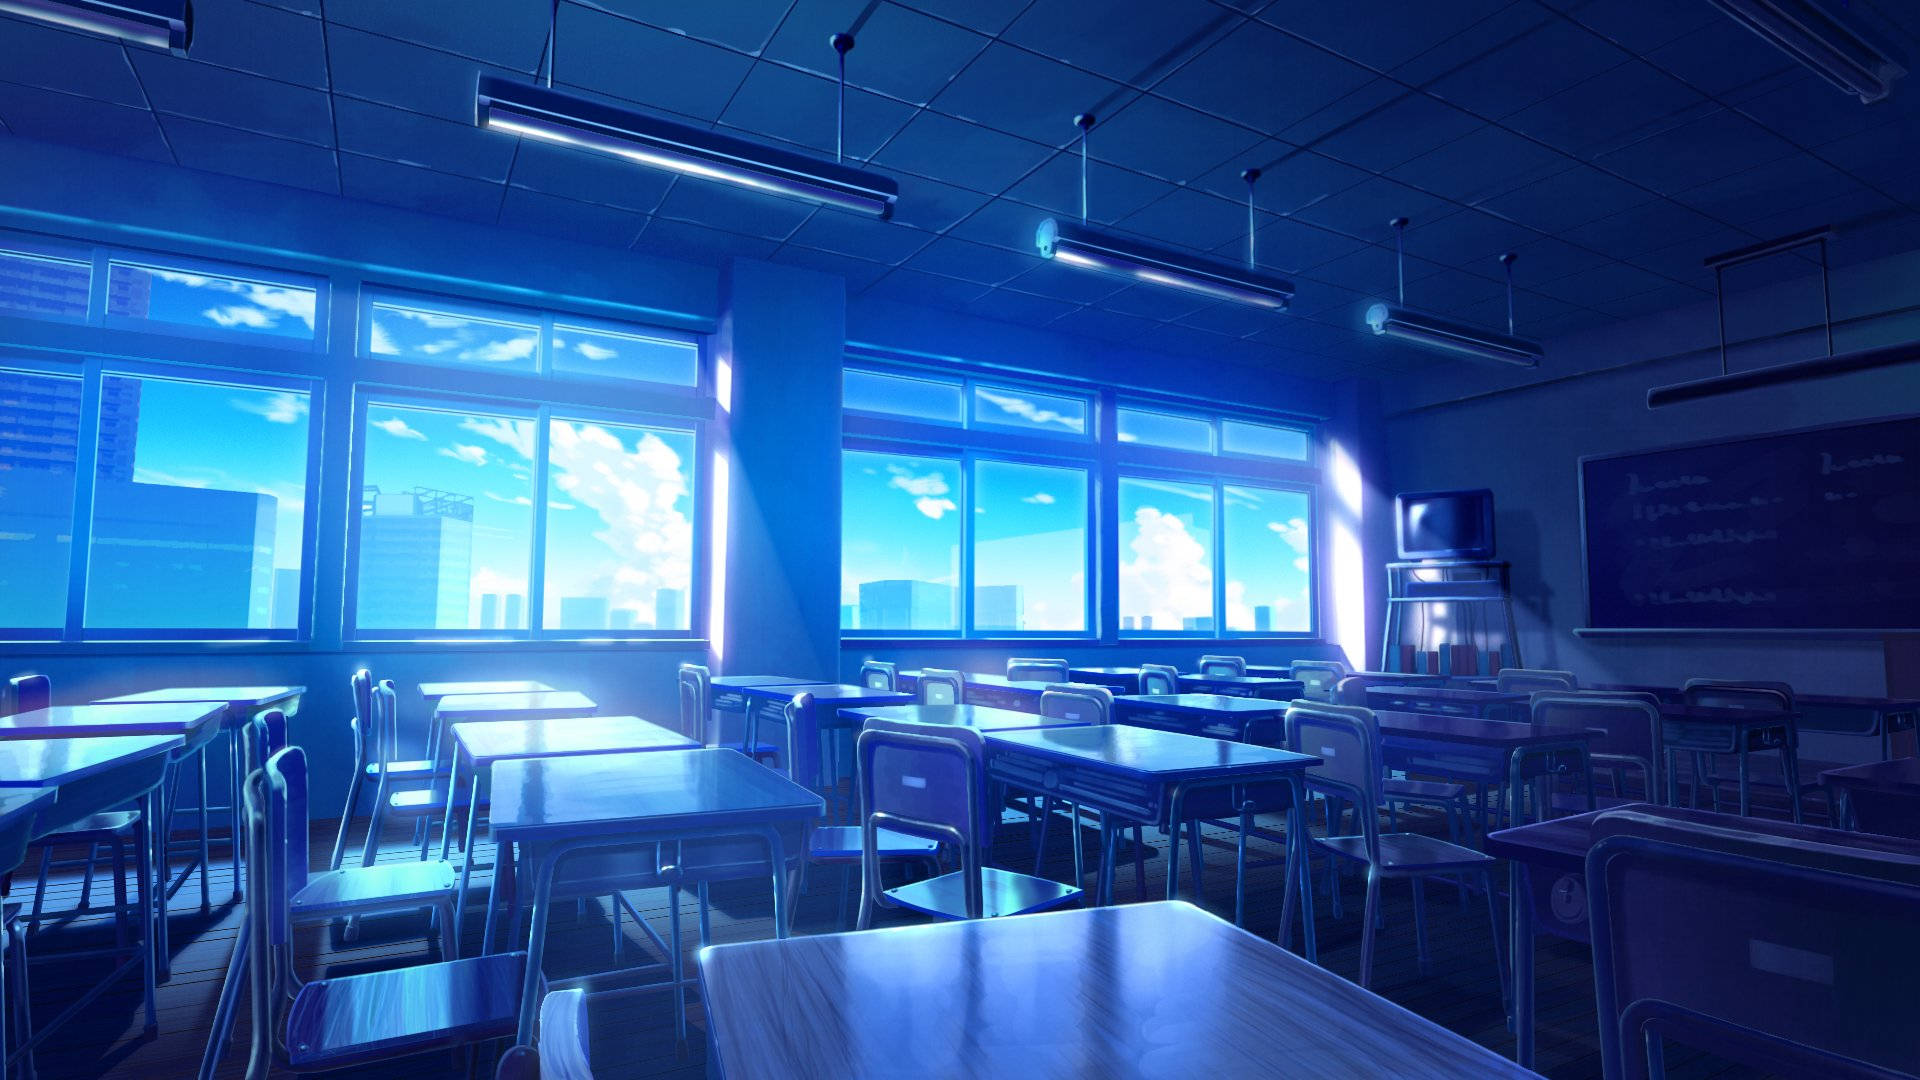 Blauebeleuchtung In Einem Anime-klassenraum. Wallpaper